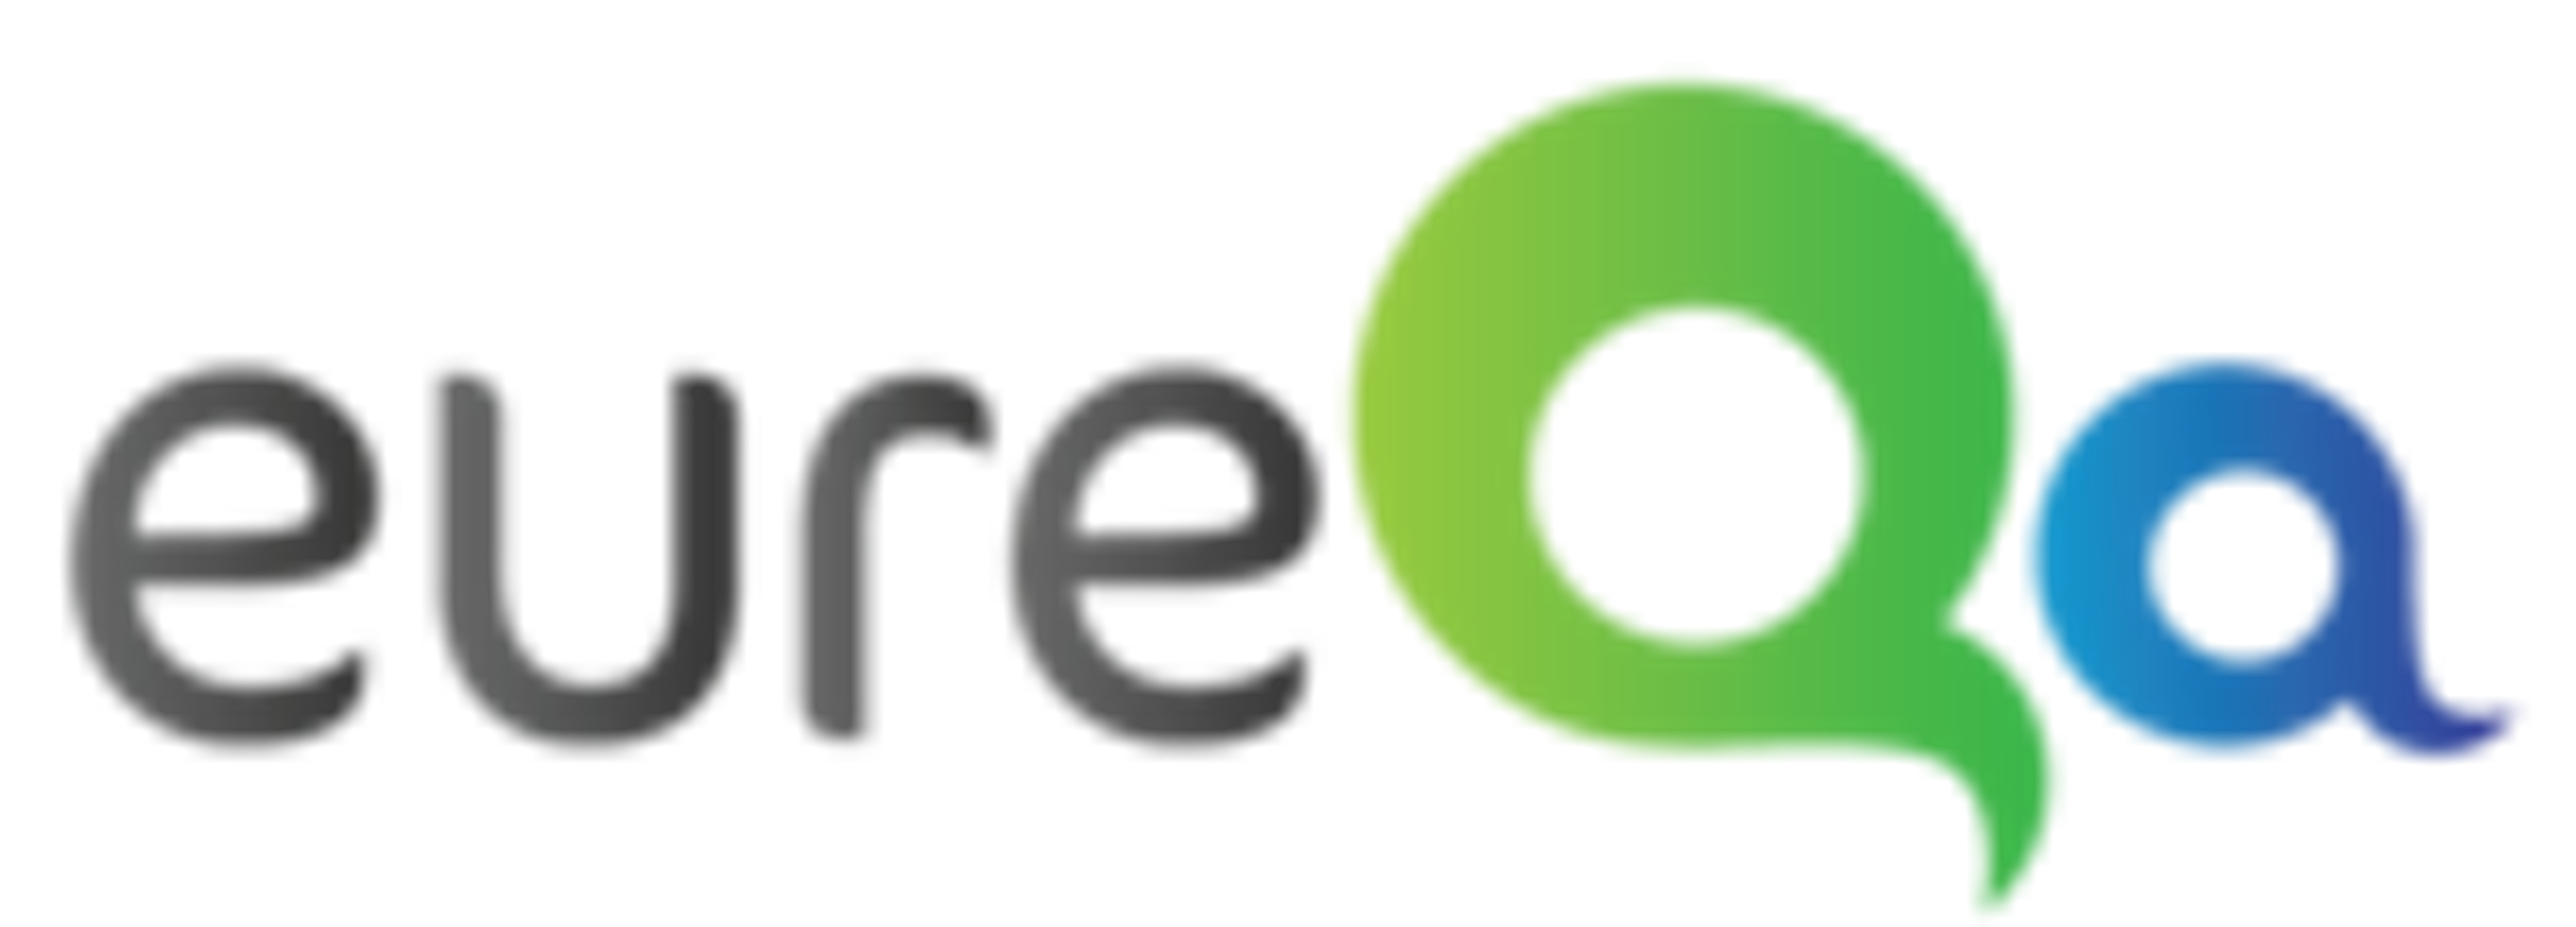 eureQa Logo